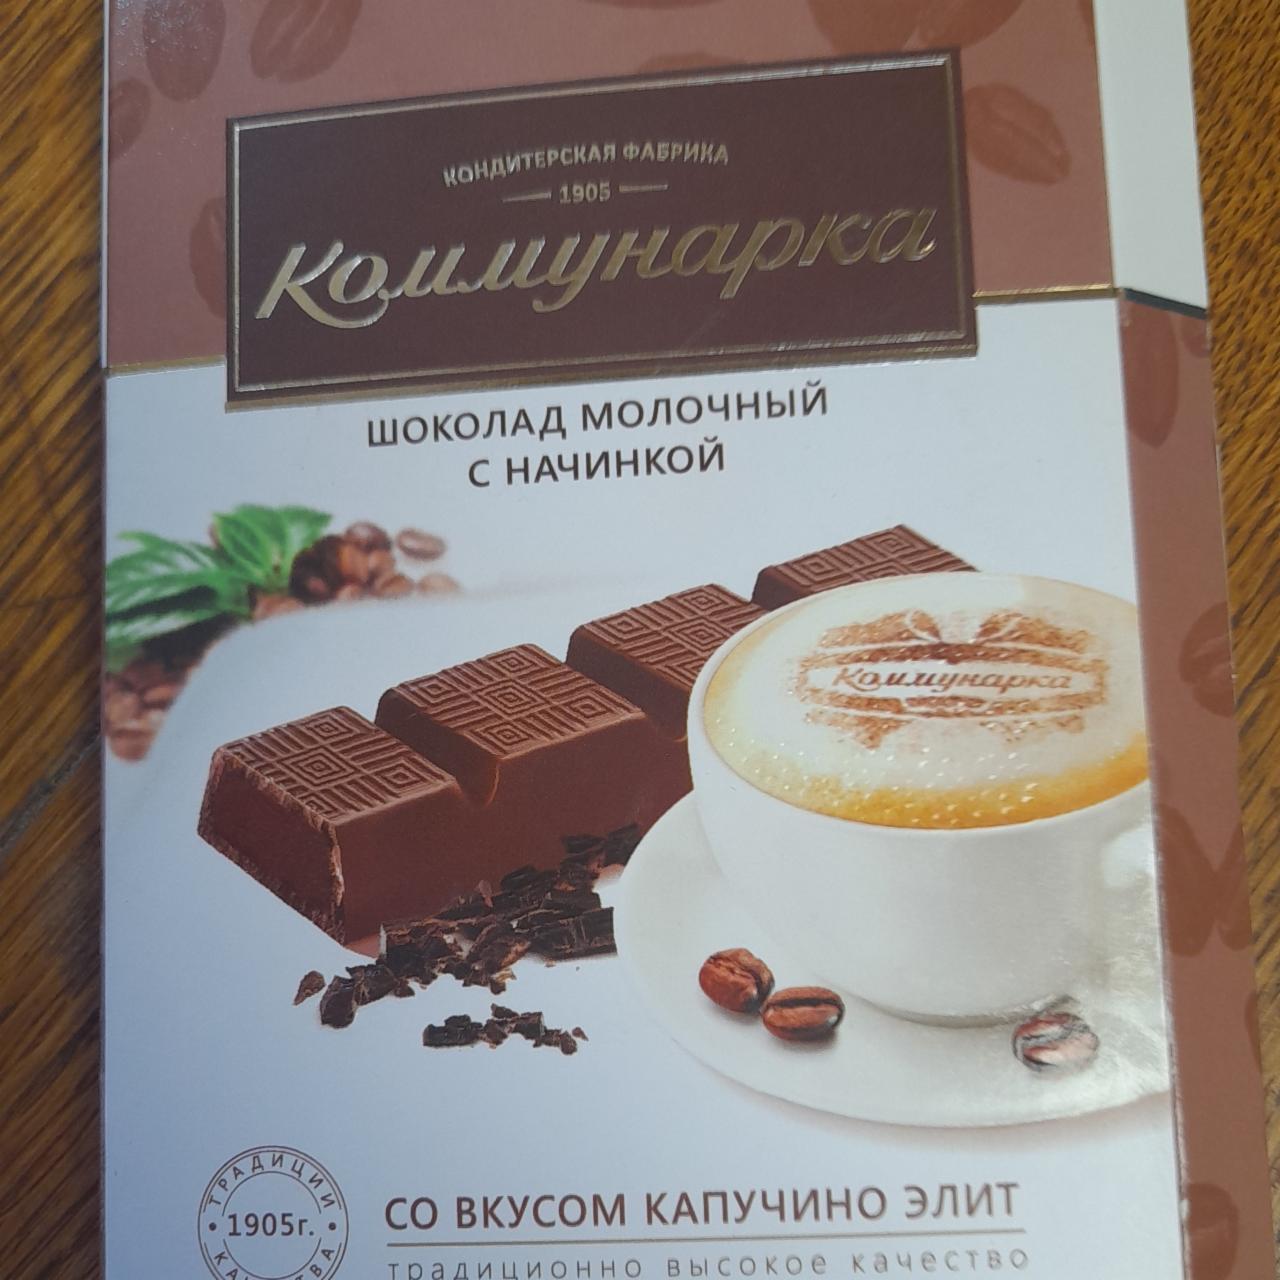 Фото - шоколад с молочной начинкой со вкусом капучино элит Коммунарка